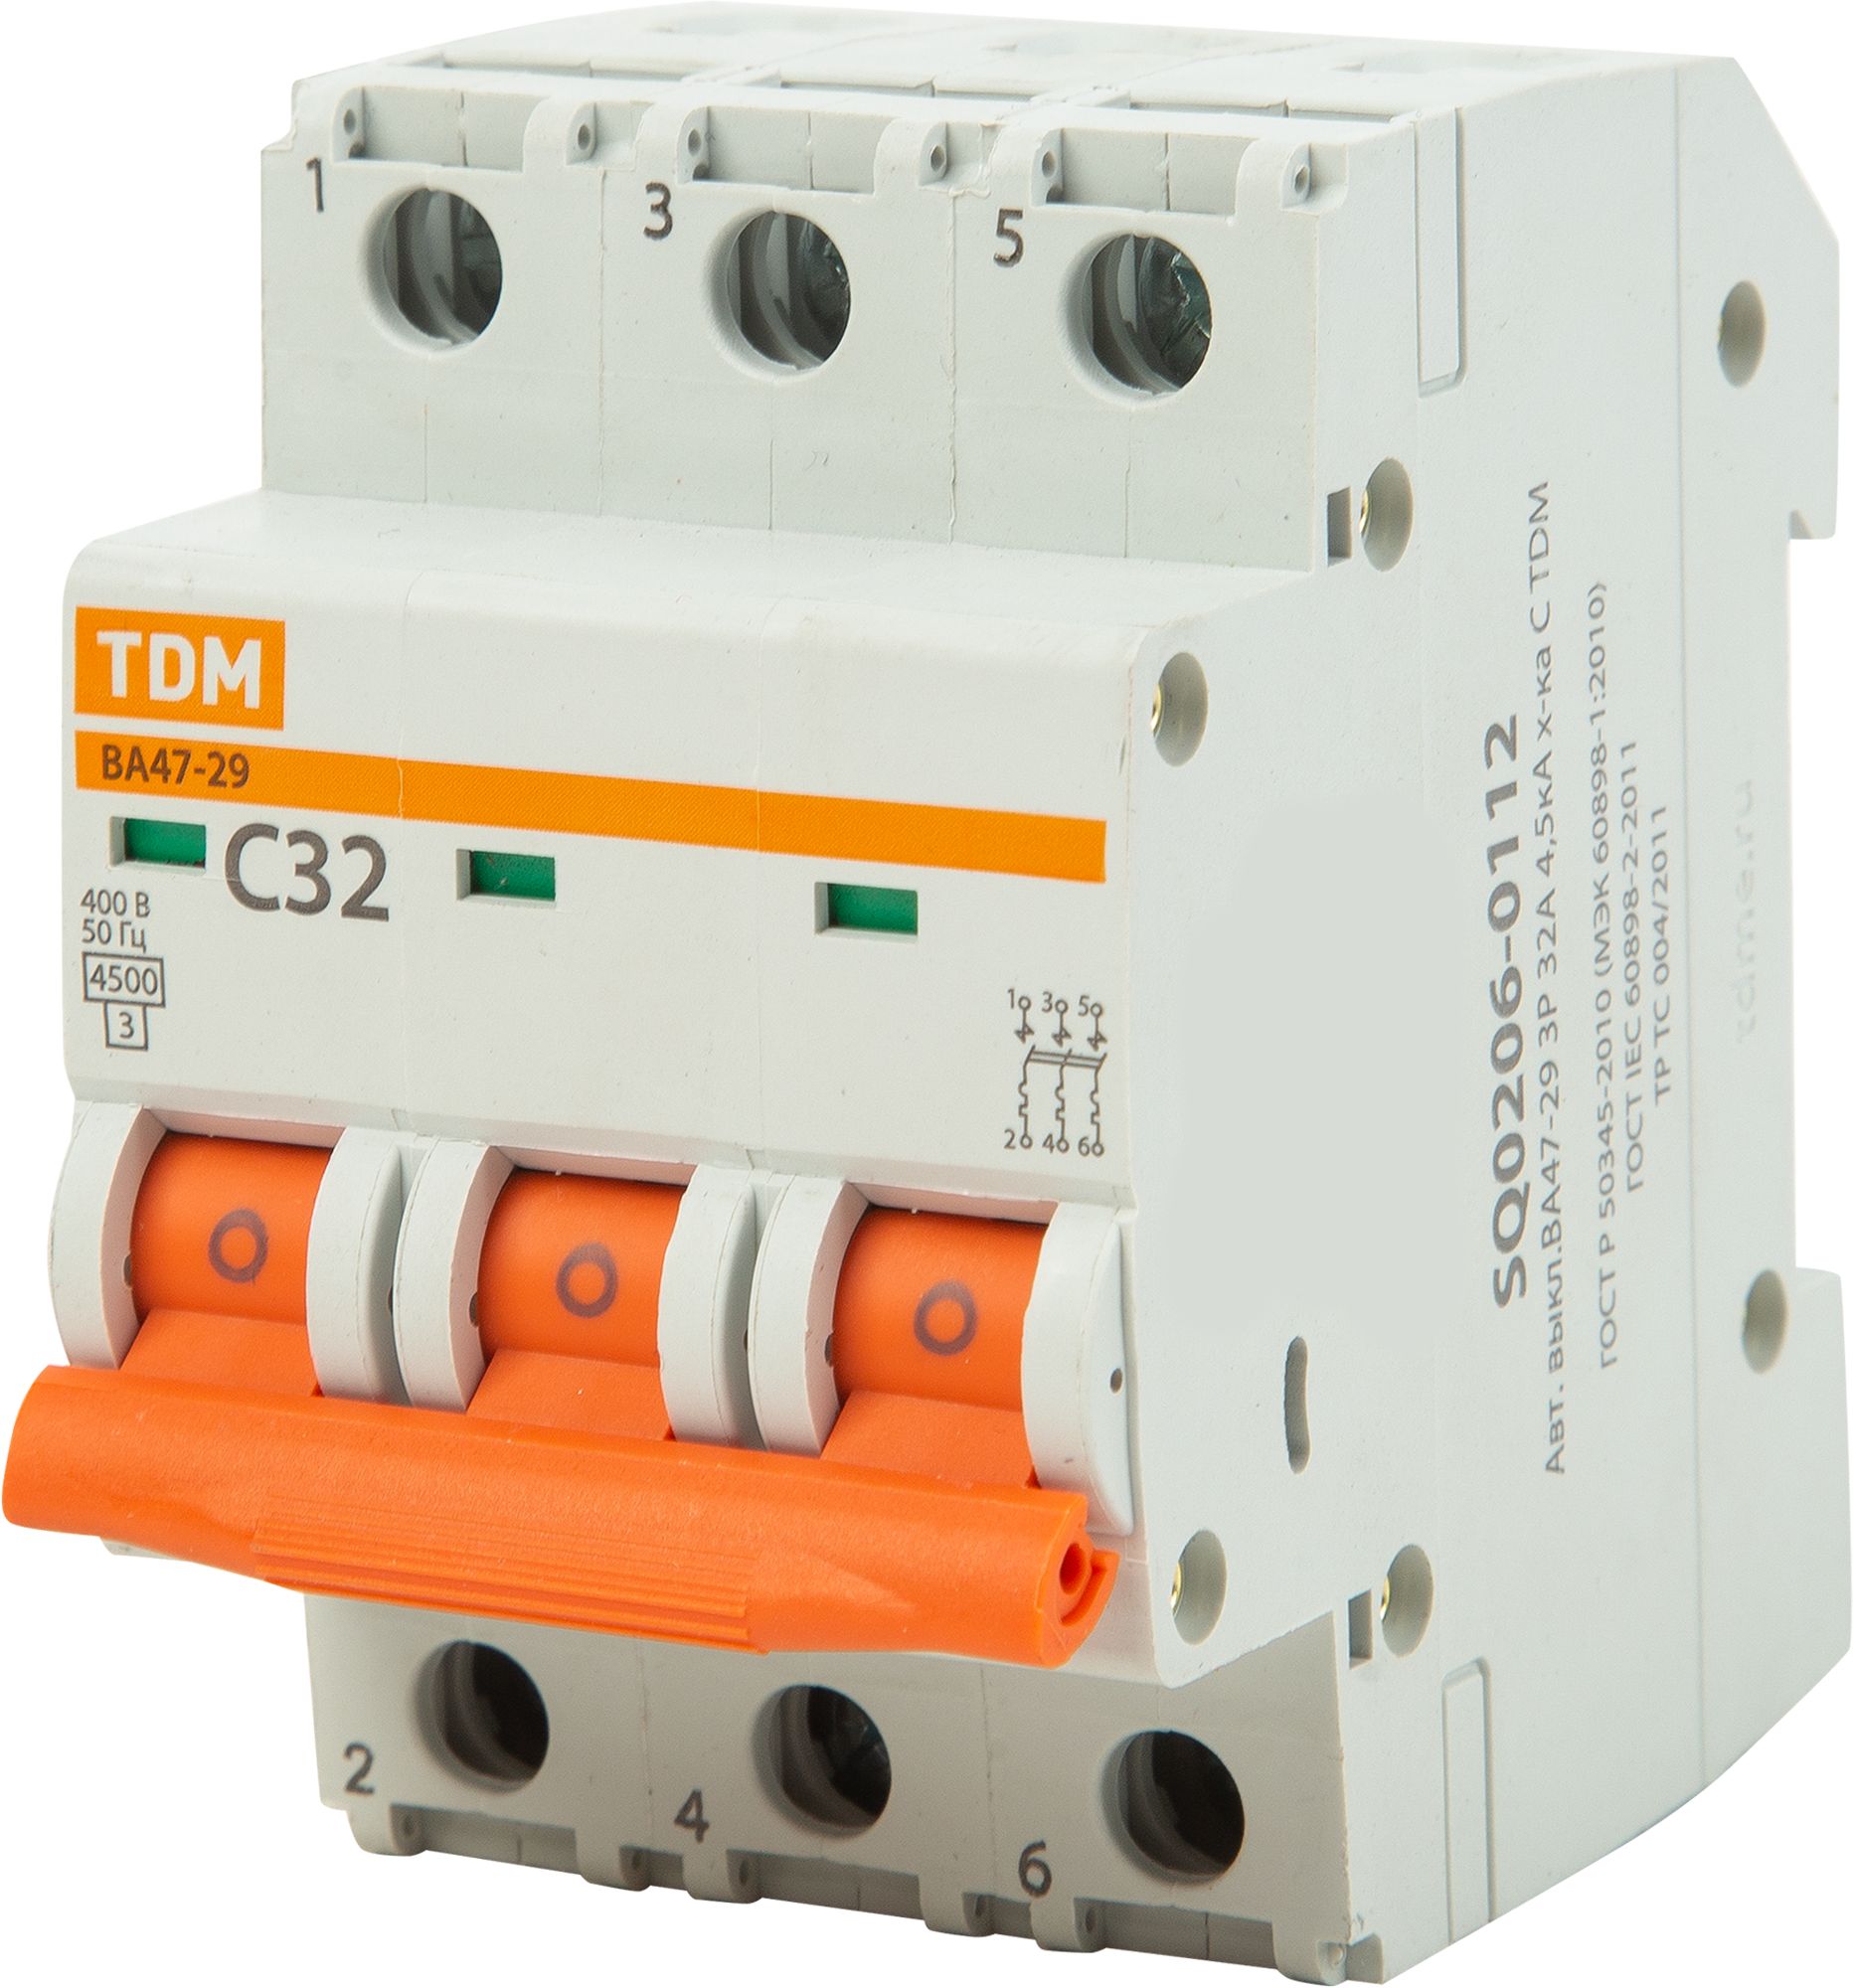 Автоматический выключатель ва 47 29 10а. Автоматический выключатель TDM ва47-29. Автоматический выключатель TDM c32. Автомат TDM sq0206-0040. Автомат TDM sq0206-0021.